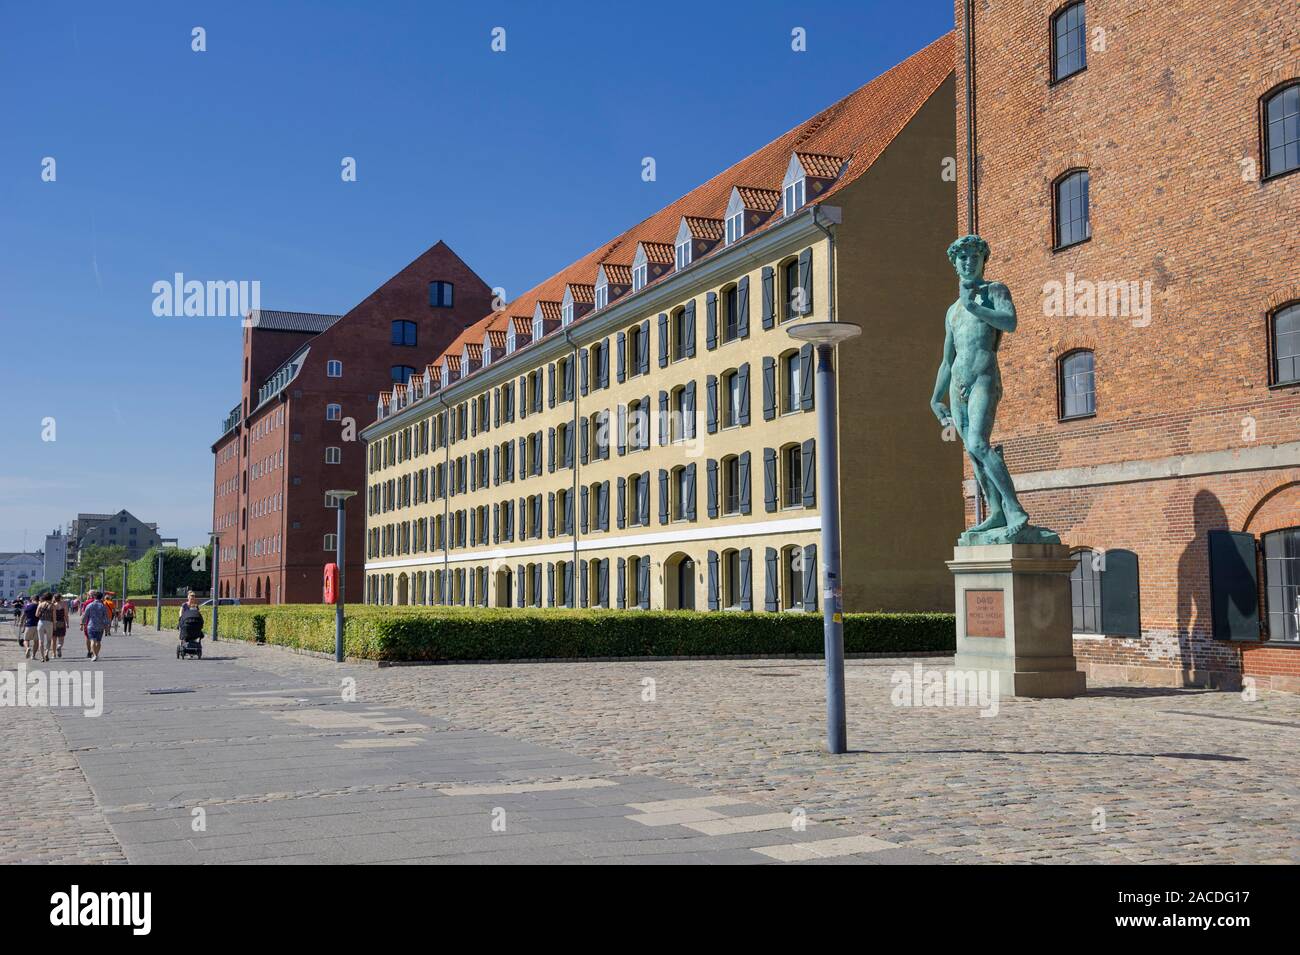 Eine Kopie von Michelangelos Statue des David durch den Hafen in Kopenhagen, Dänemark. Stockfoto